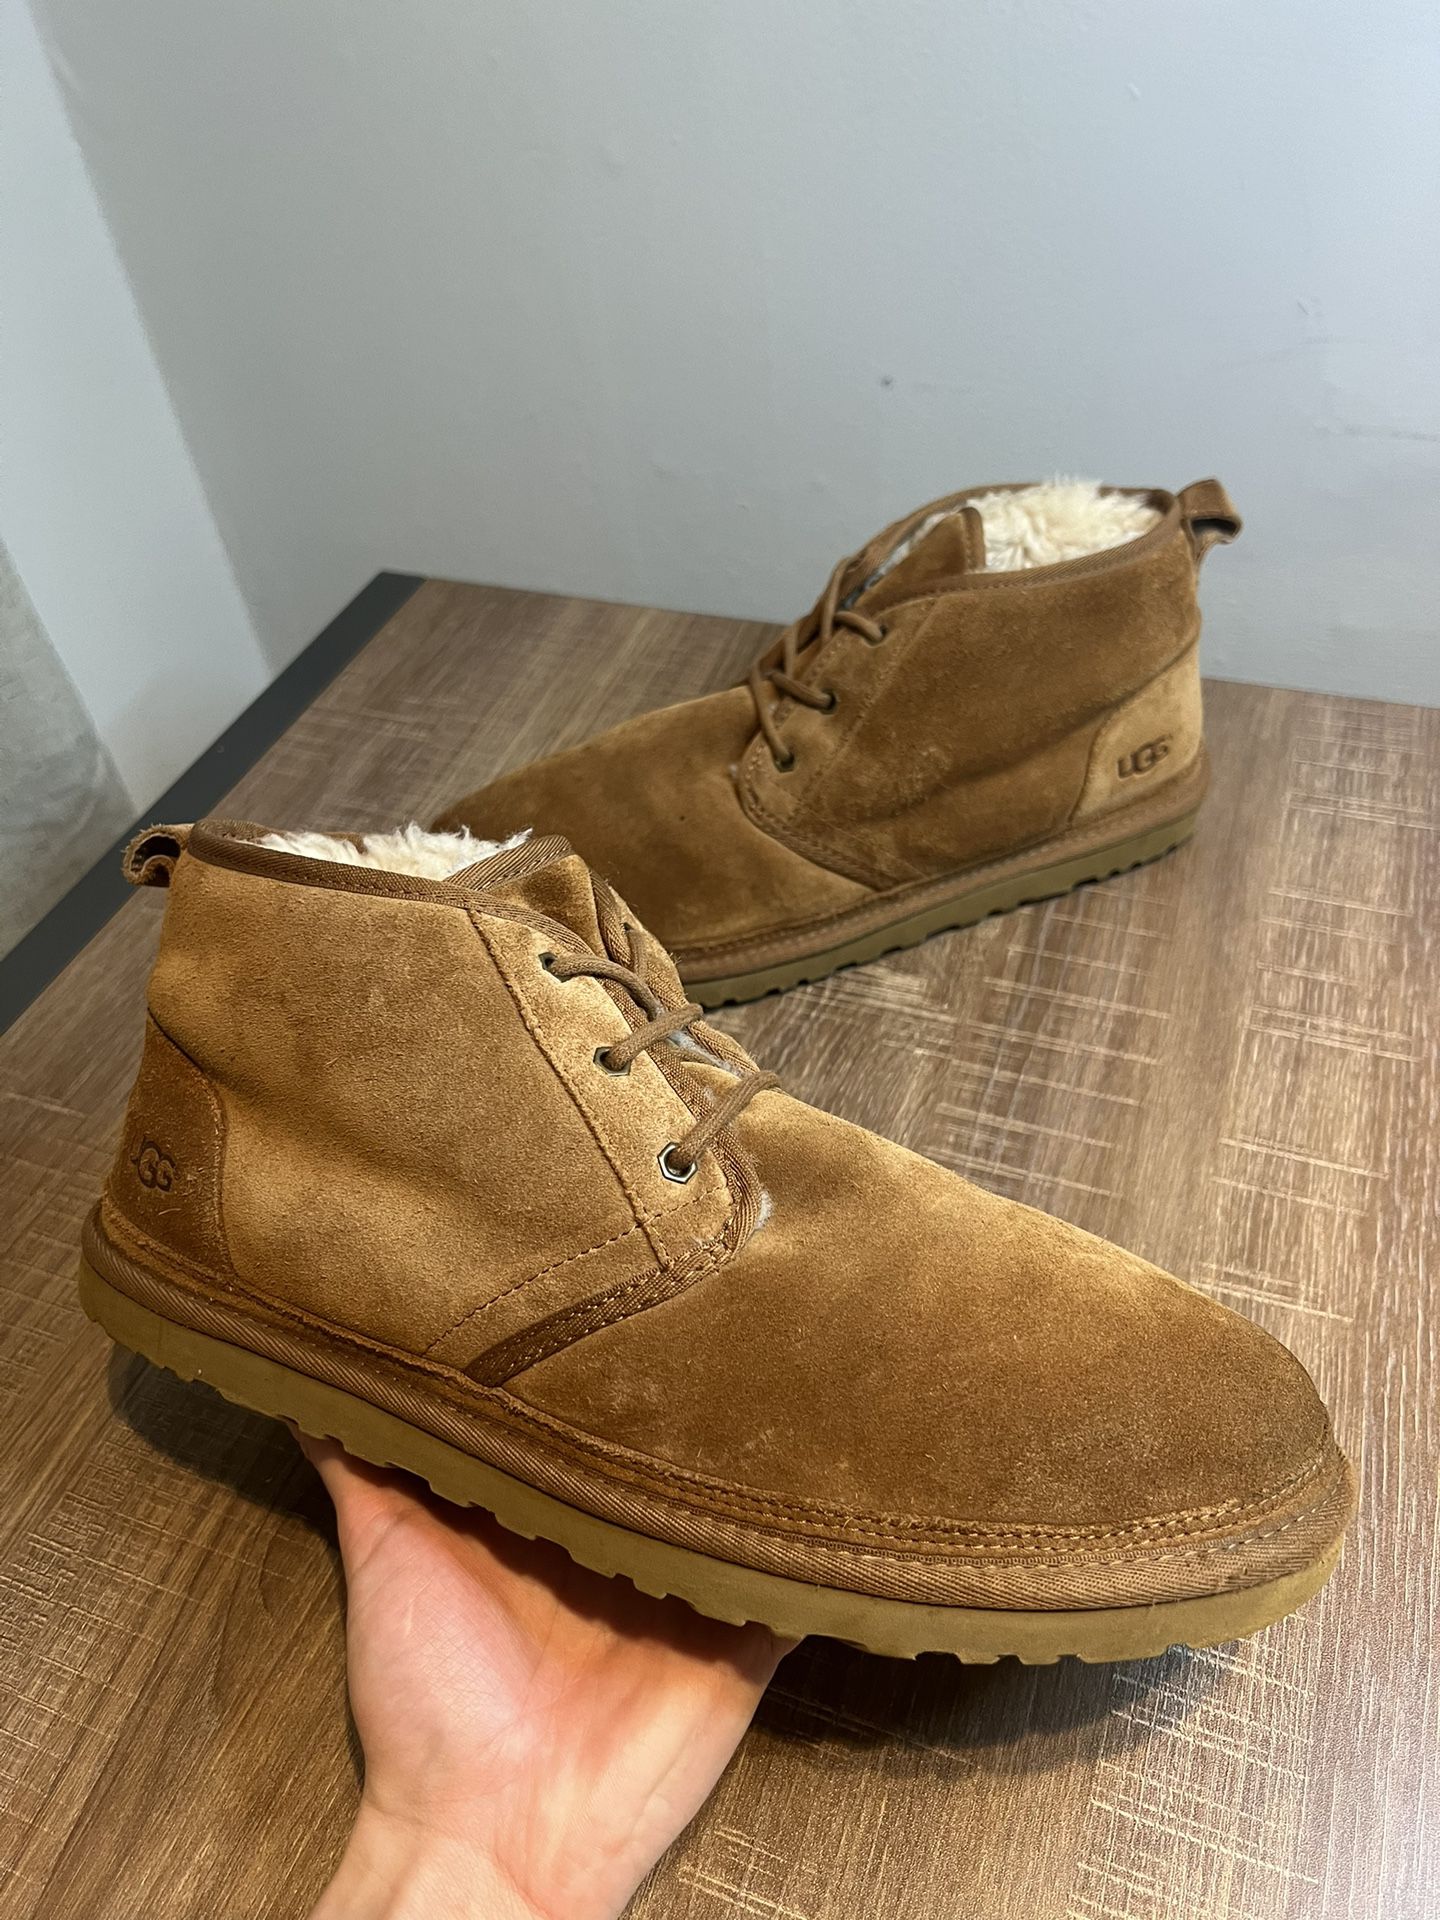 UGG Australia Mens Neumel Chestnut Brown Suede Chukka Sheepskin Boots Size 13